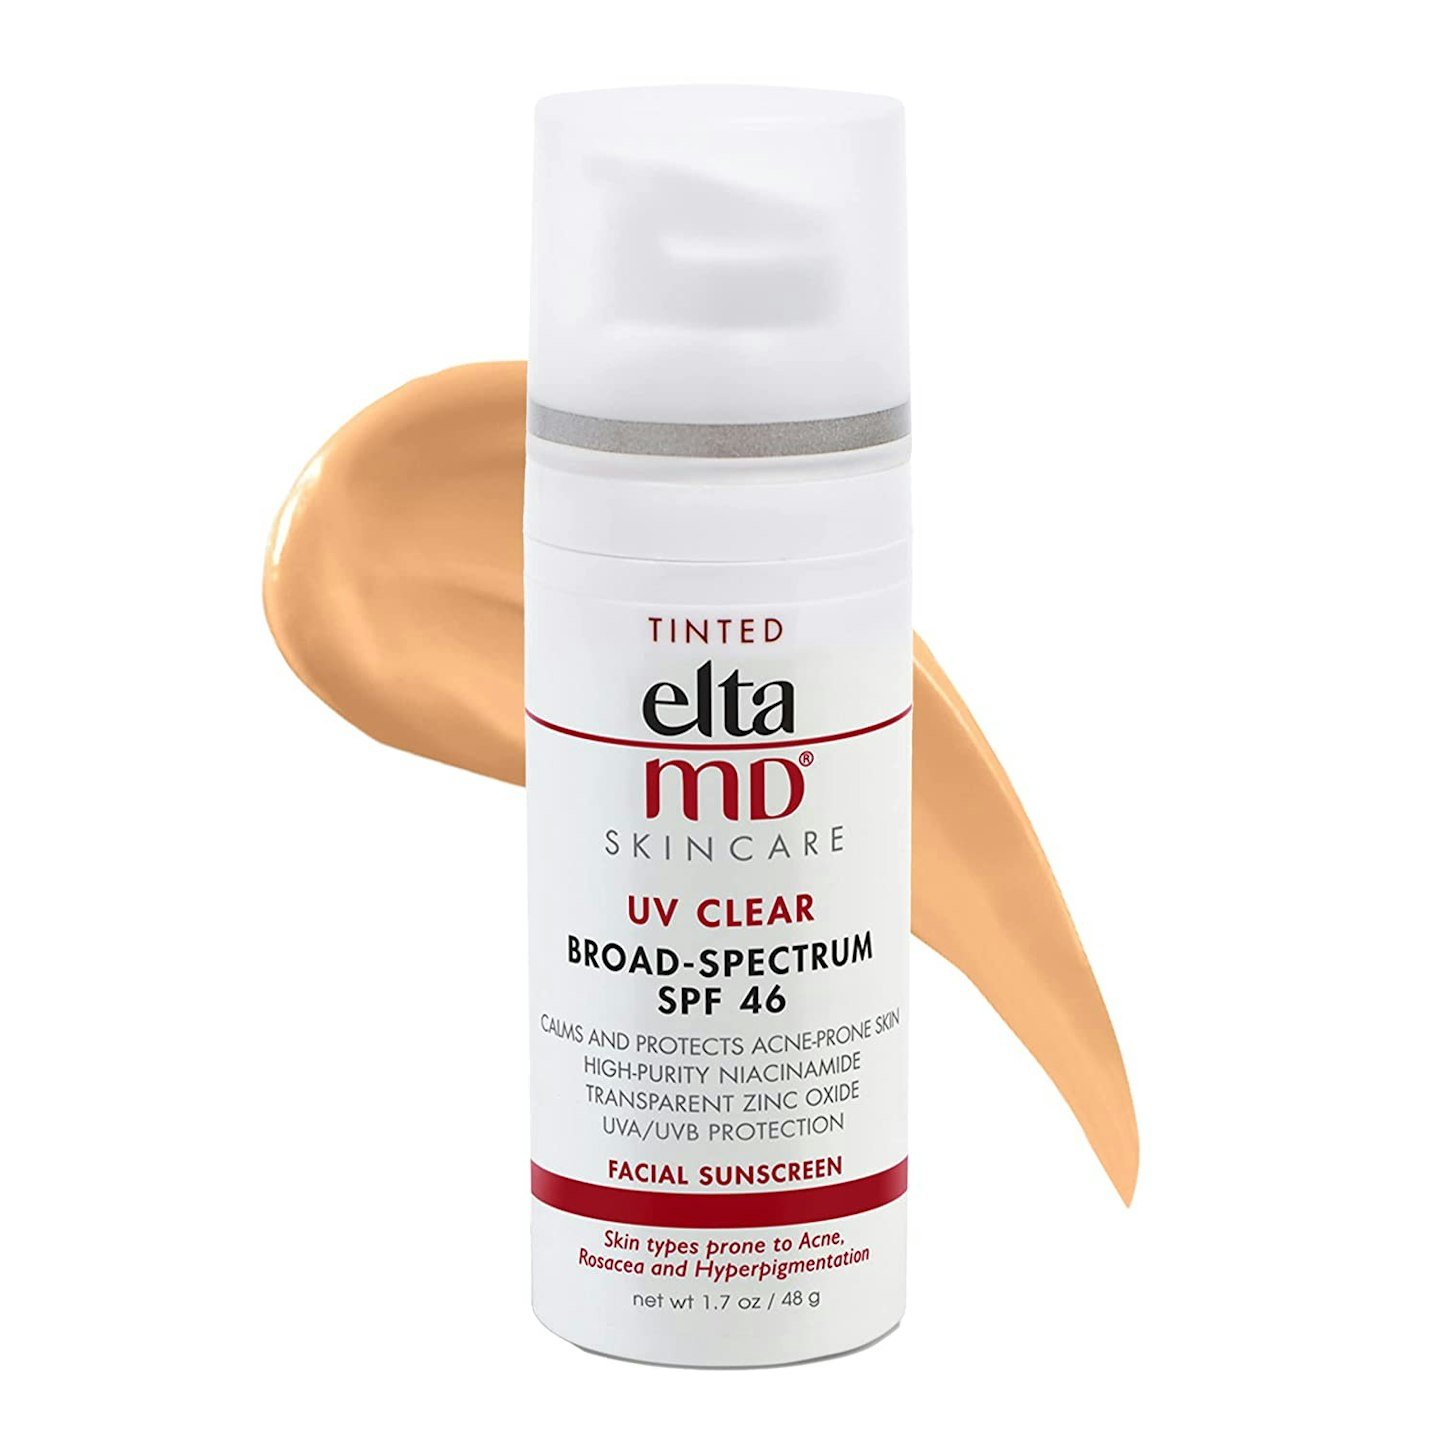 EltaMD UV Clear Broad-Spectrum SPF 46 Tinted Facial Sunscreen